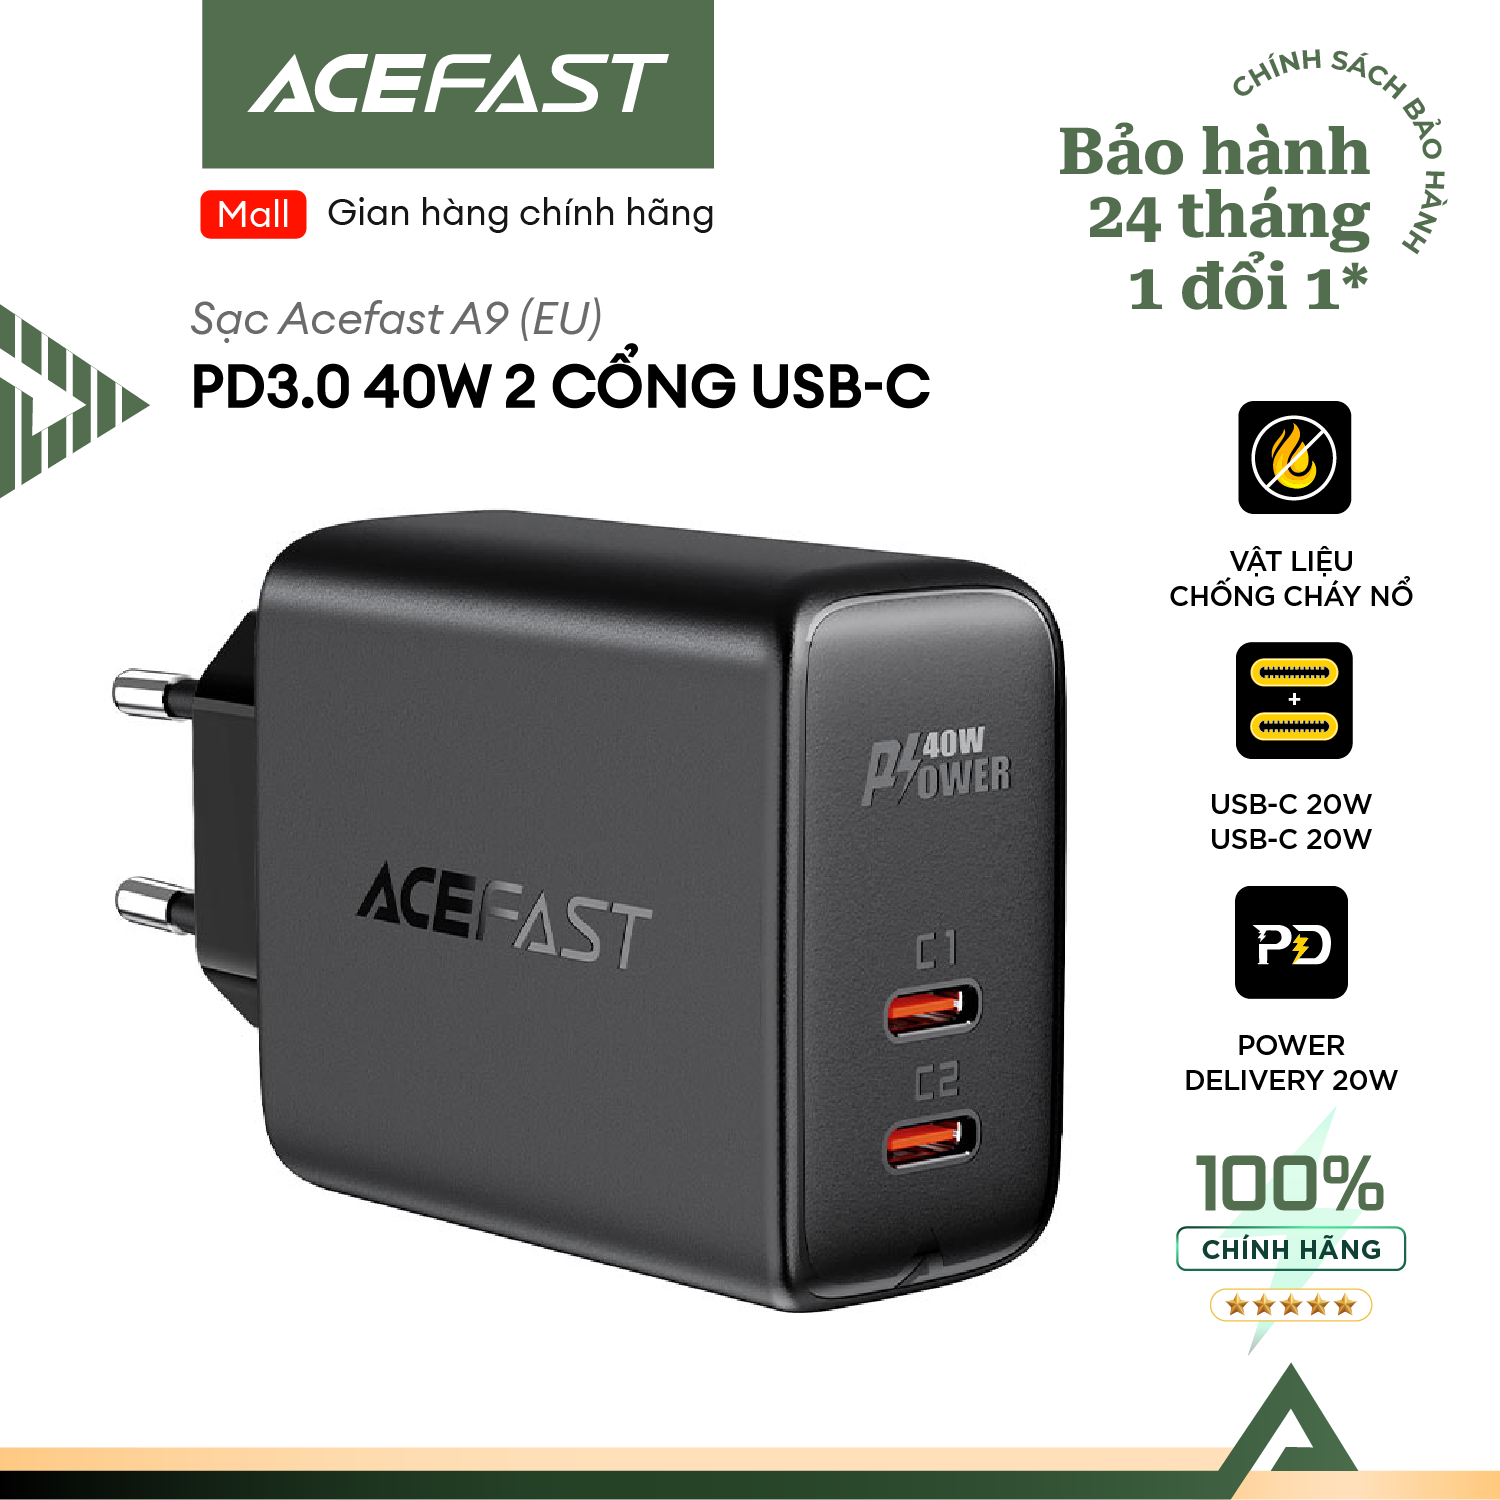 Sạc Acefast PD3.0 40W 2 cổng USB-C (EU) - A9 Hàng chính hãng Acefast